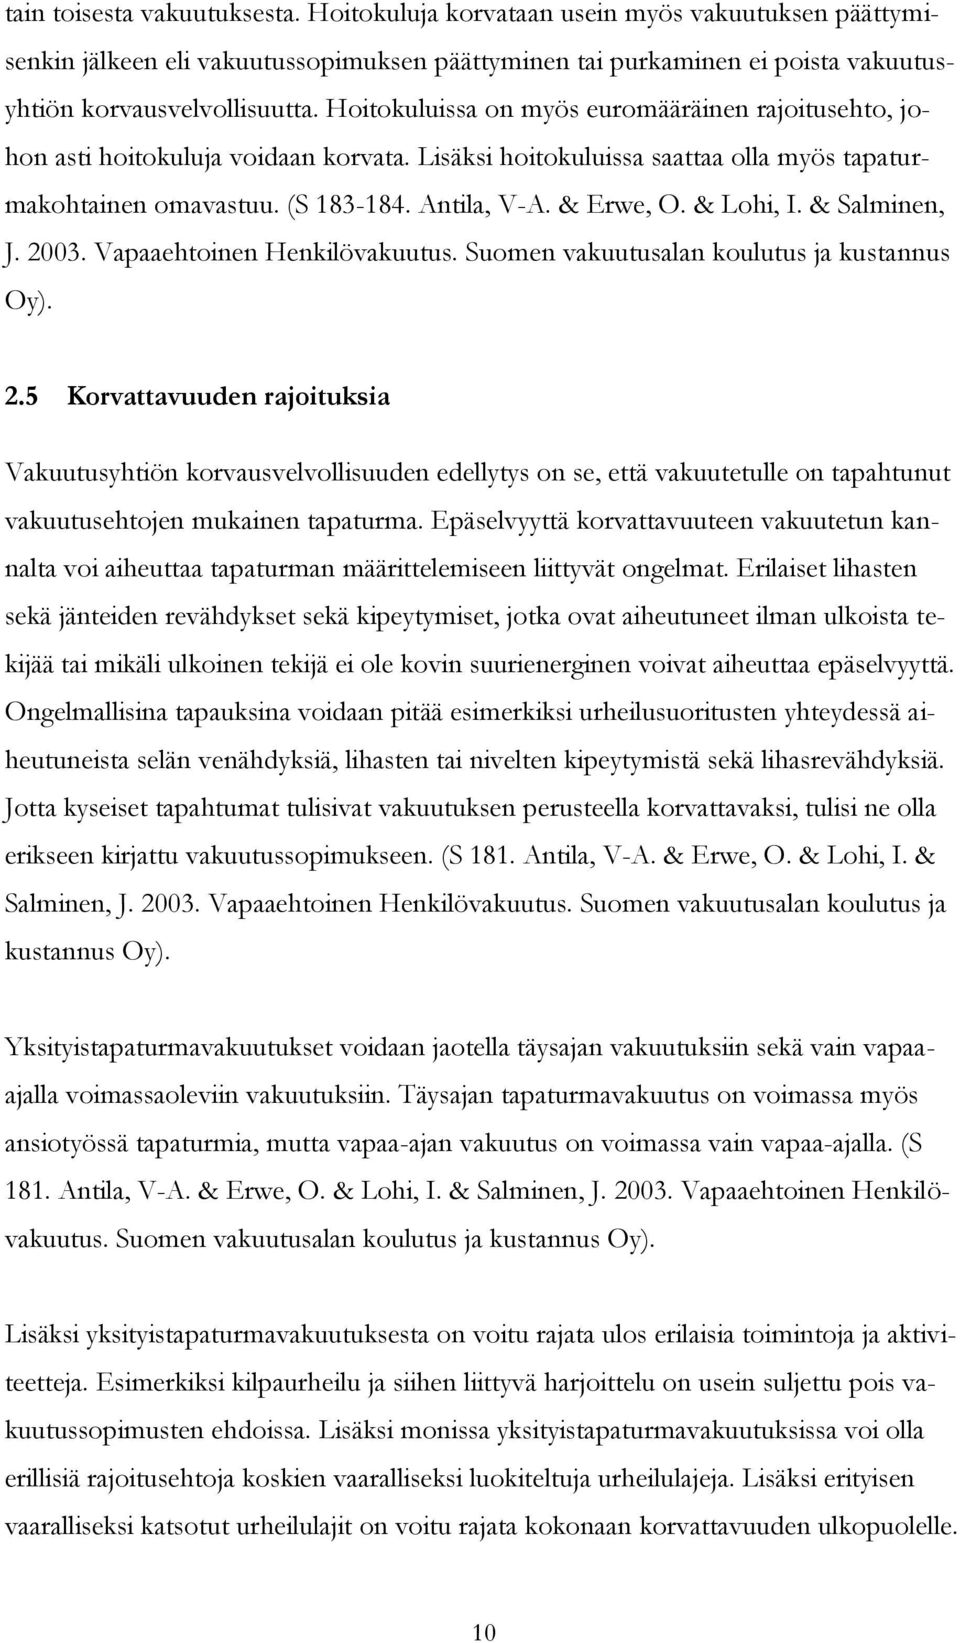 & Lohi, I. & Salminen, J. 2003. Vapaaehtoinen Henkilövakuutus. Suomen vakuutusalan koulutus ja kustannus Oy). 2.5 Korvattavuuden rajoituksia Vakuutusyhtiön korvausvelvollisuuden edellytys on se, että vakuutetulle on tapahtunut vakuutusehtojen mukainen tapaturma.